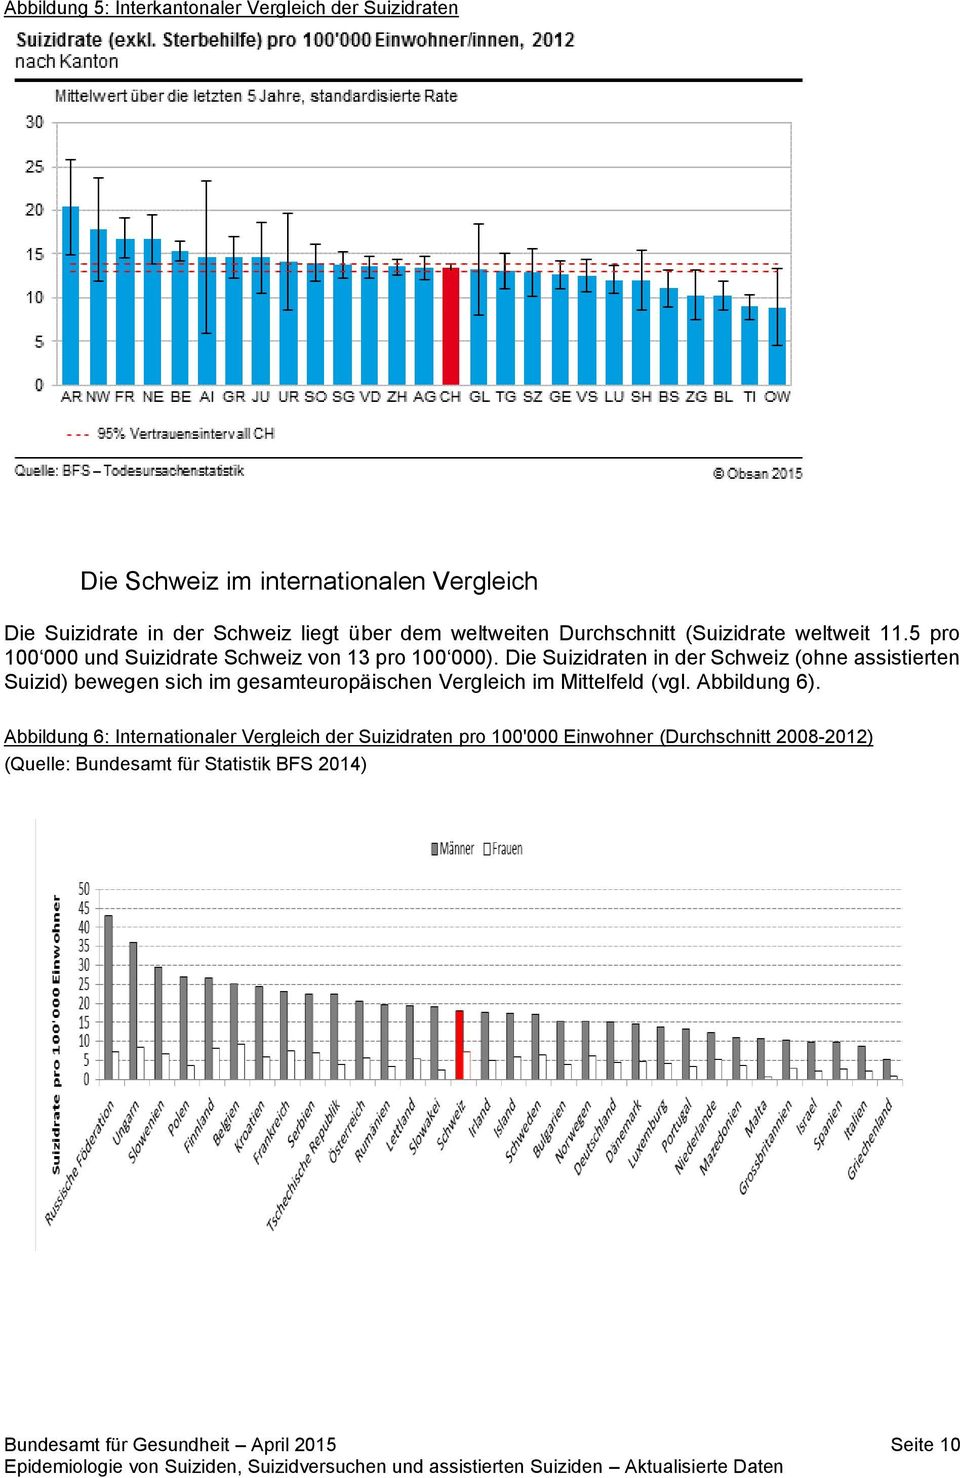 Die Suizidraten in der Schweiz (ohne assistierten Suizid) bewegen sich im gesamteuropäischen Vergleich im Mittelfeld (vgl. Abbildung 6).